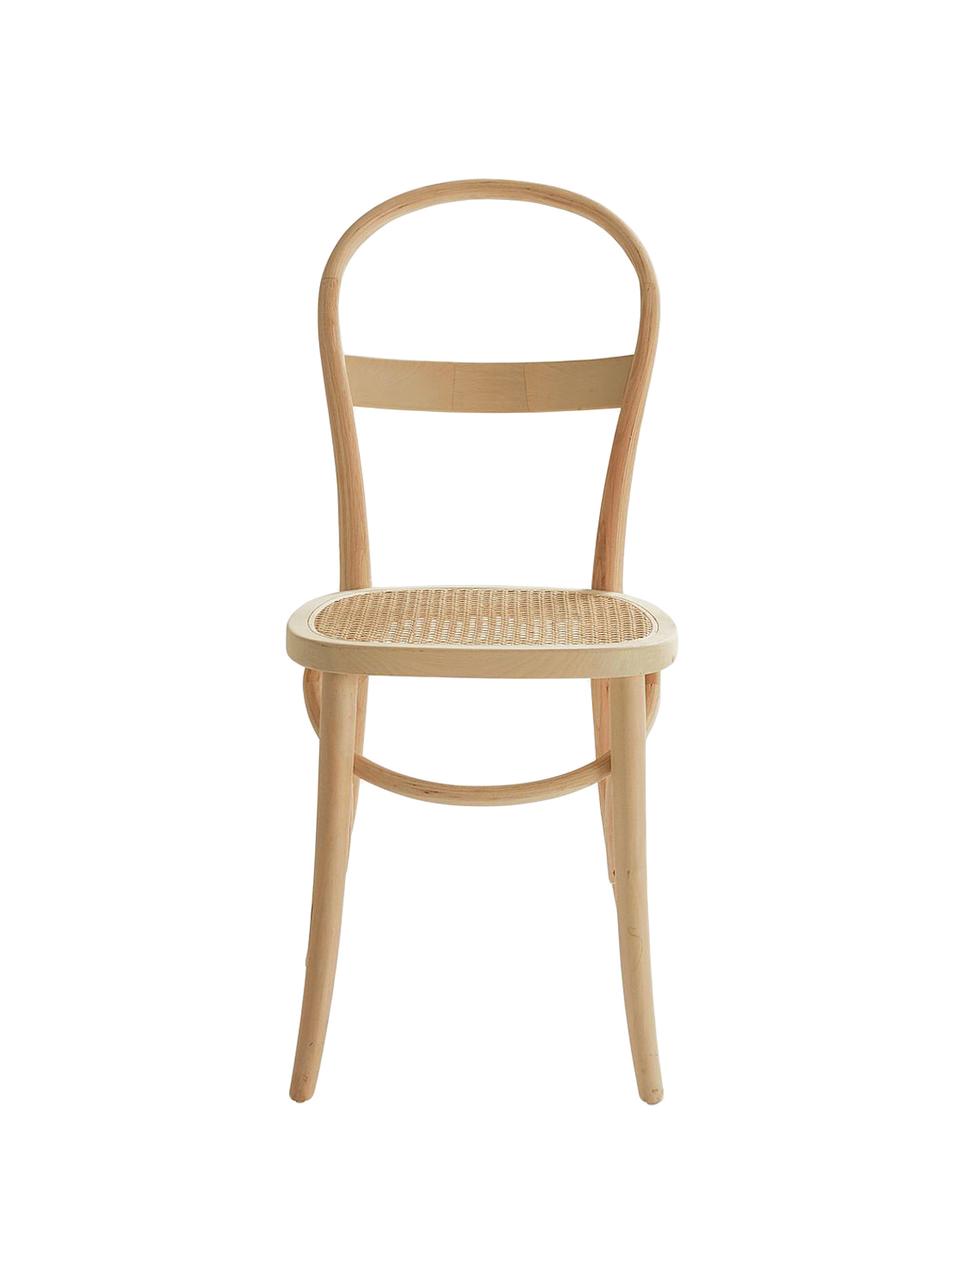 Drewniane krzesło z plecionką wiedeńską Rippats, 2 szt., Stelaż: drewno brzozowe, Drewno brzozowe, rattan, S 39 x G 53 cm